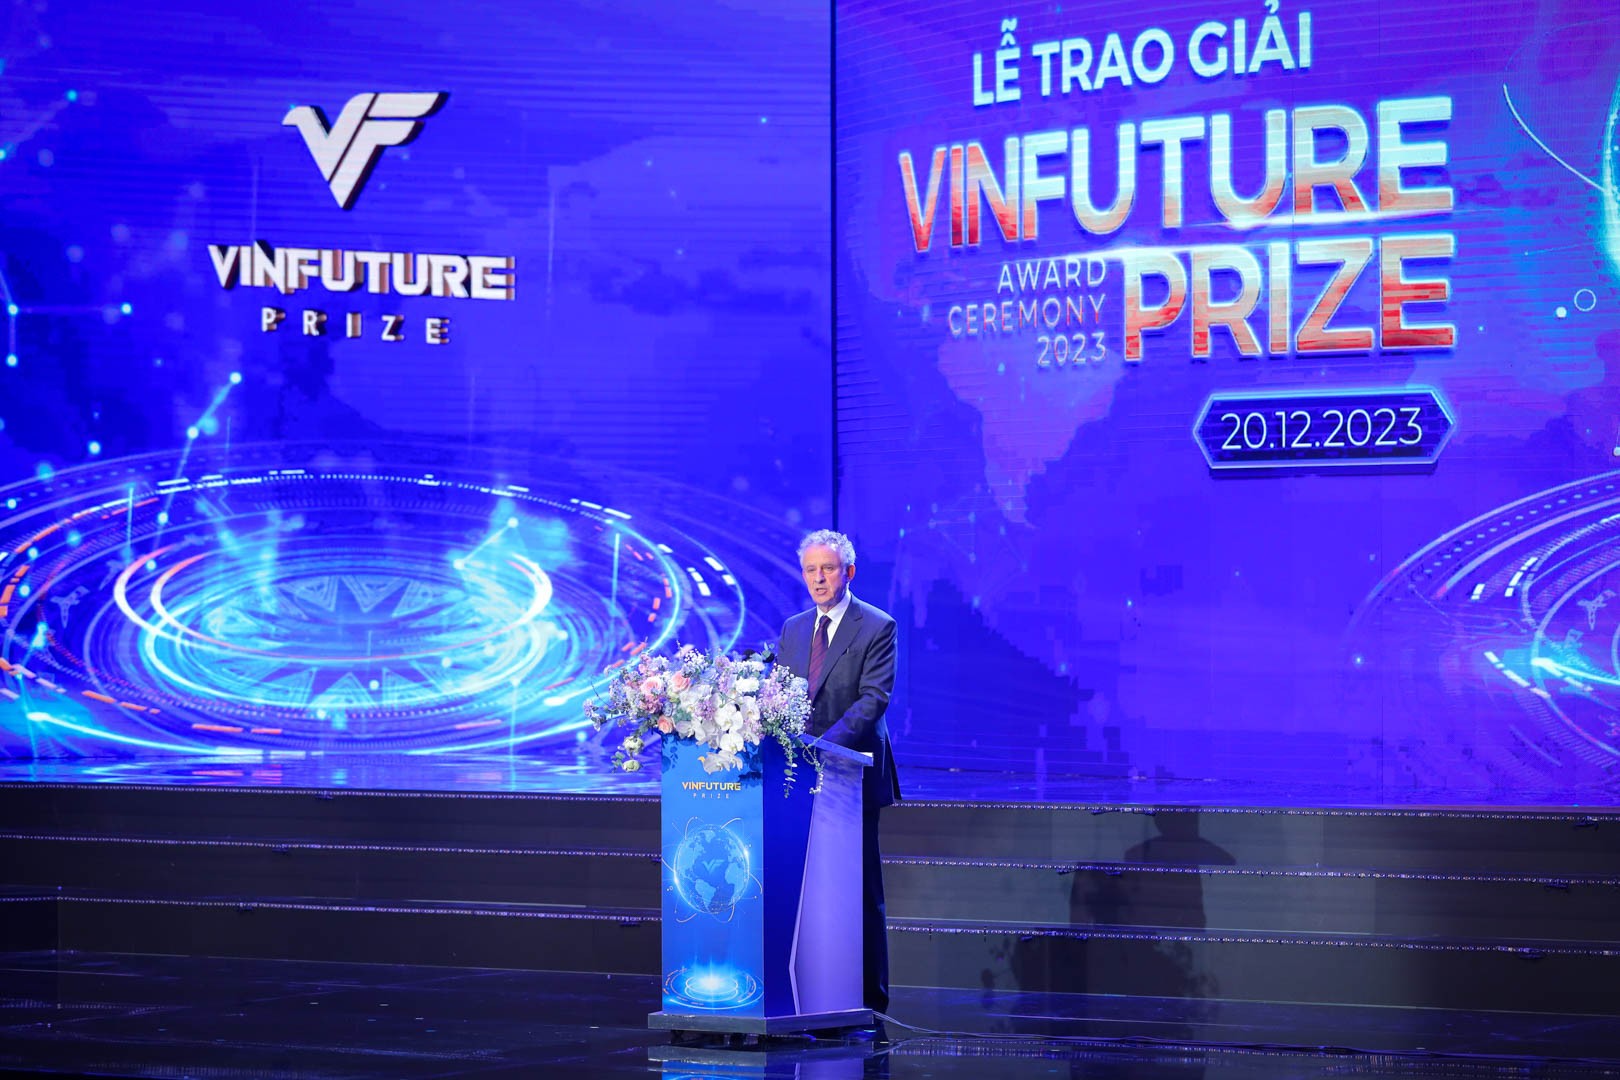 Giải thưởng VinFuture 2023 vinh danh 4 công trình khoa học ‘Chung sức toàn cầu’ ảnh 13